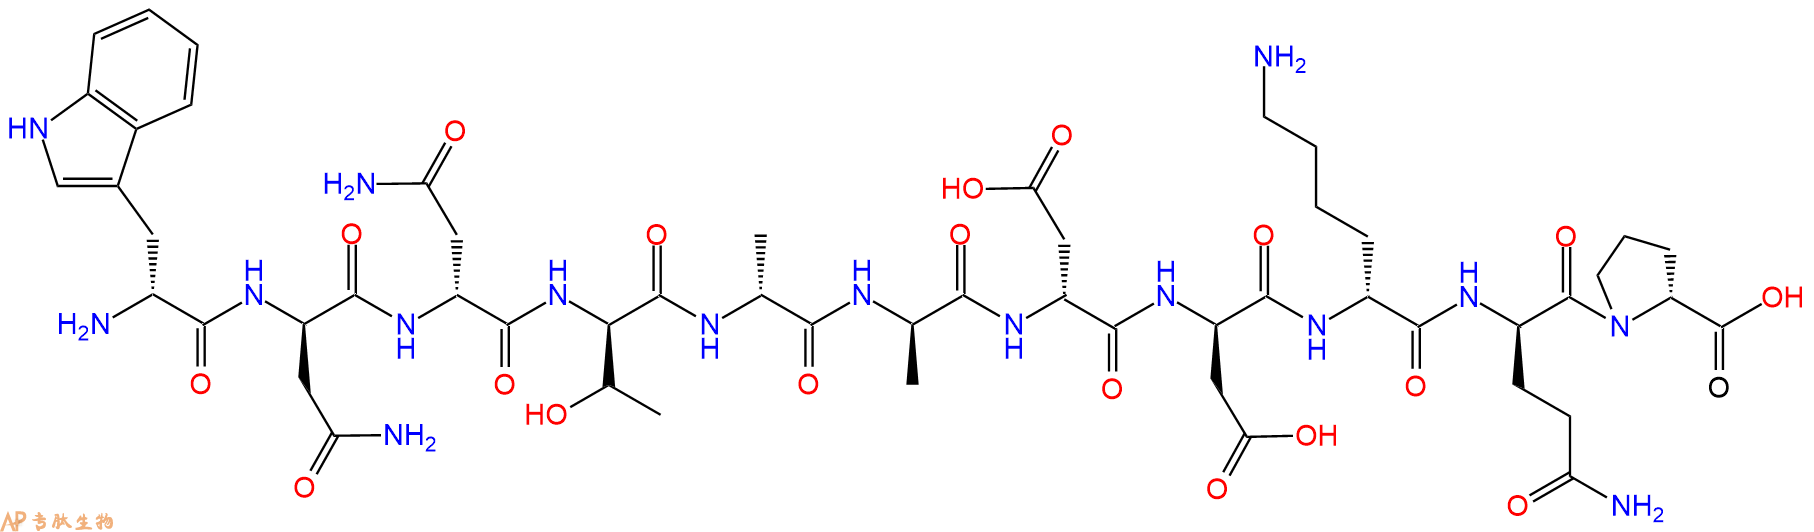 专肽生物产品H2N-DTrp-DAsn-DAsn-DThr-DAla-DAla-DAsp-DAsp-DLys-D